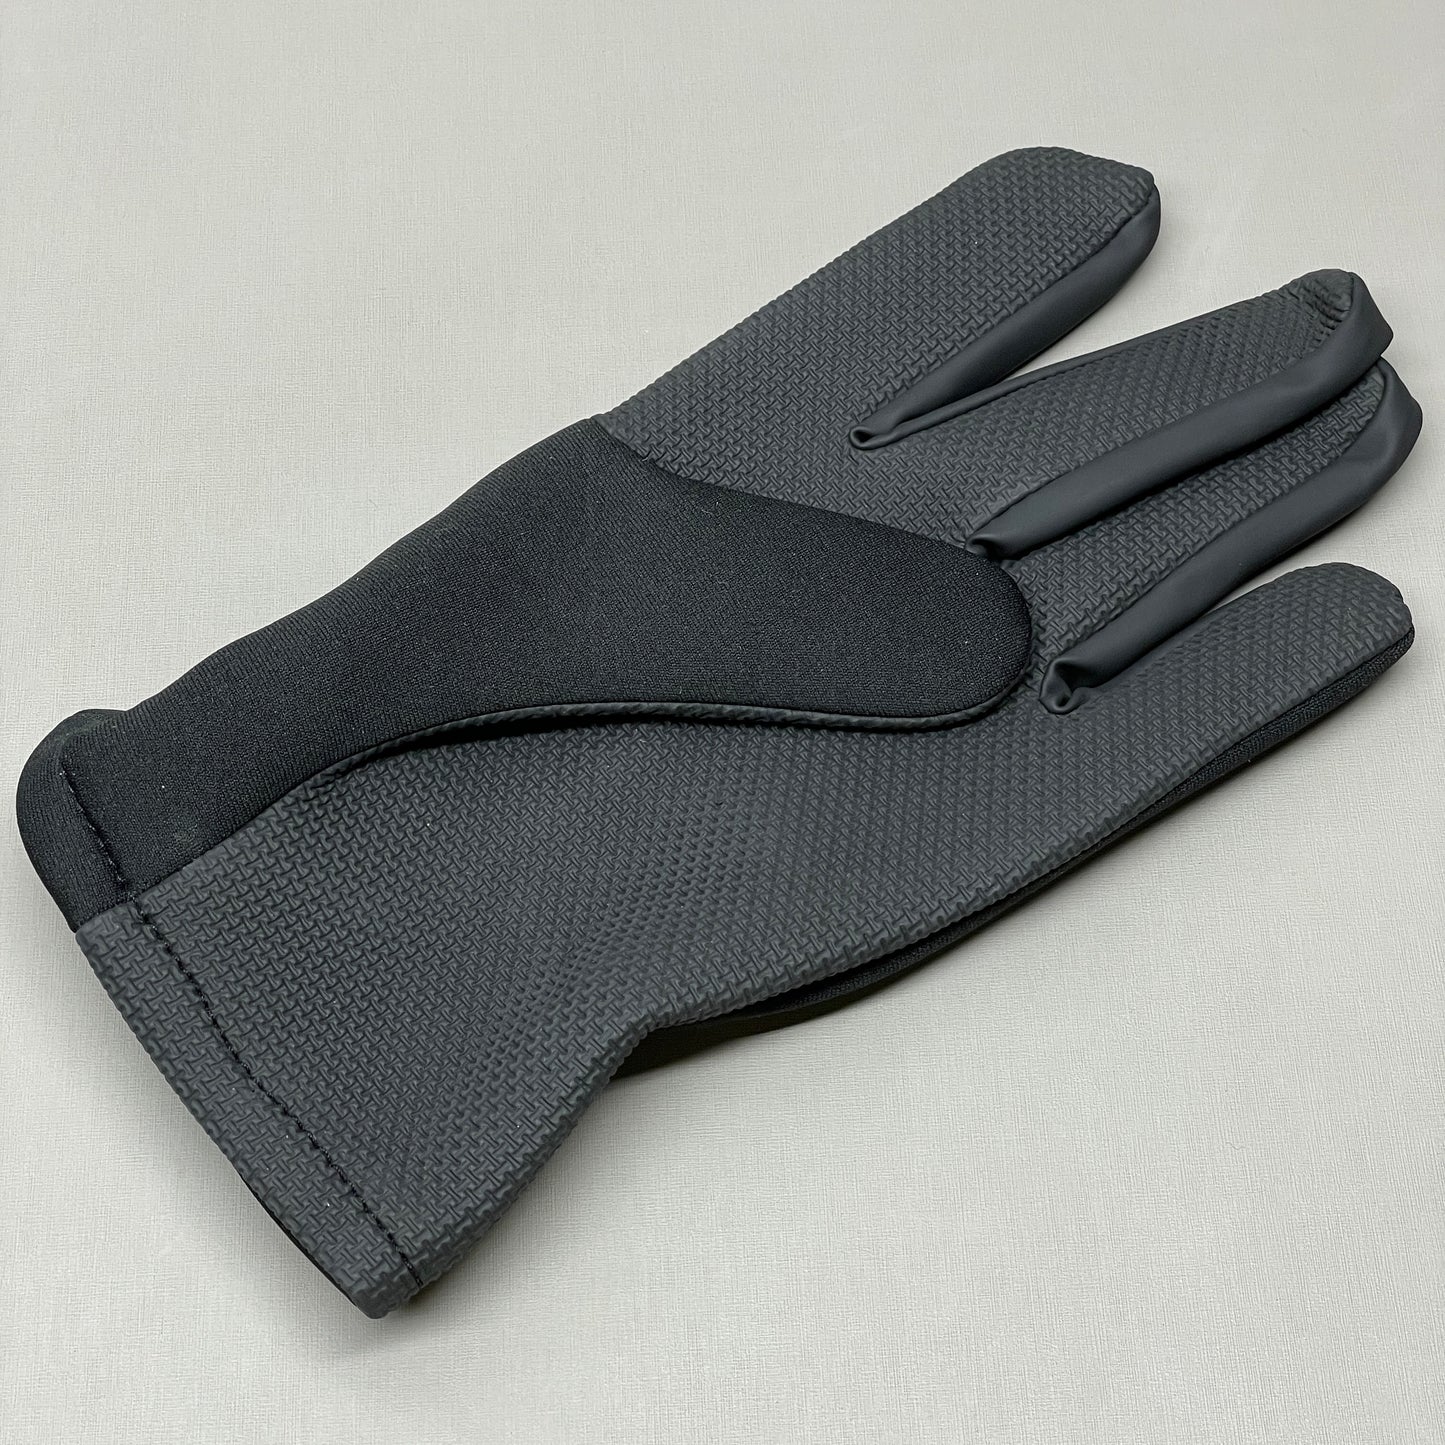 HOTSHOT "Shredder" Neoprene Fishing Glove Sz XL Black (New)